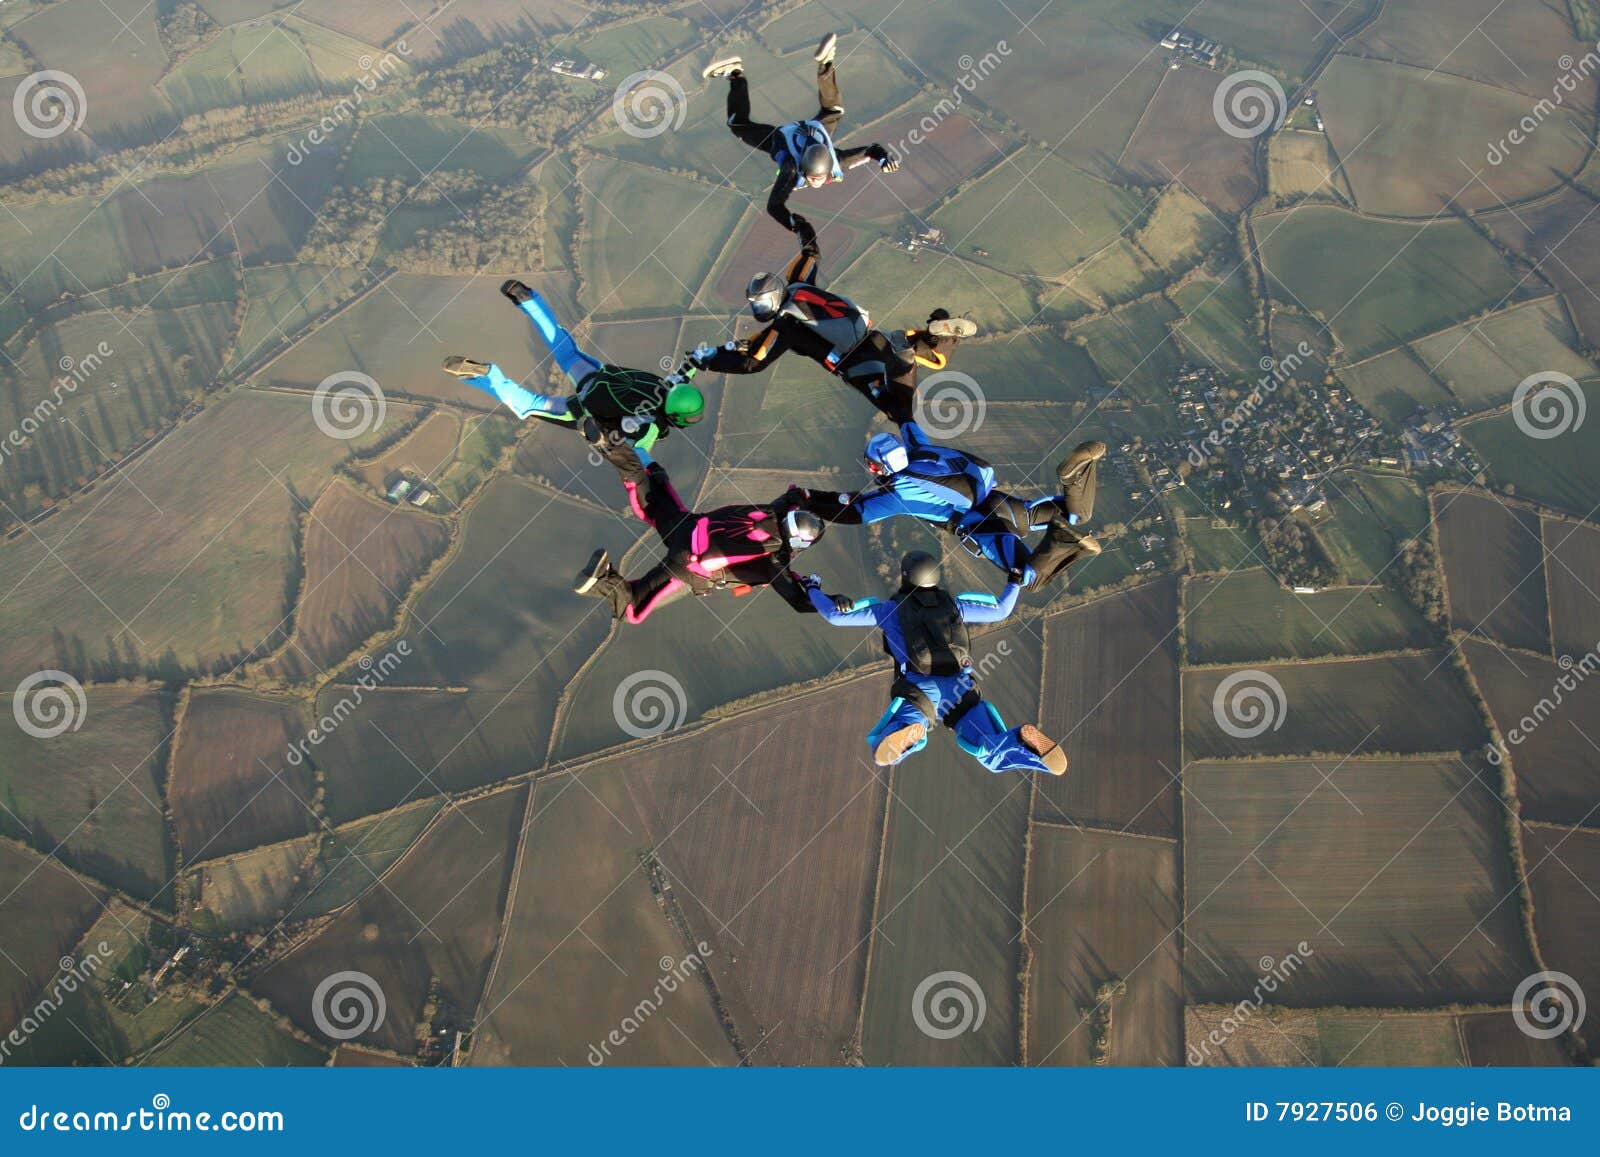 six skydivers